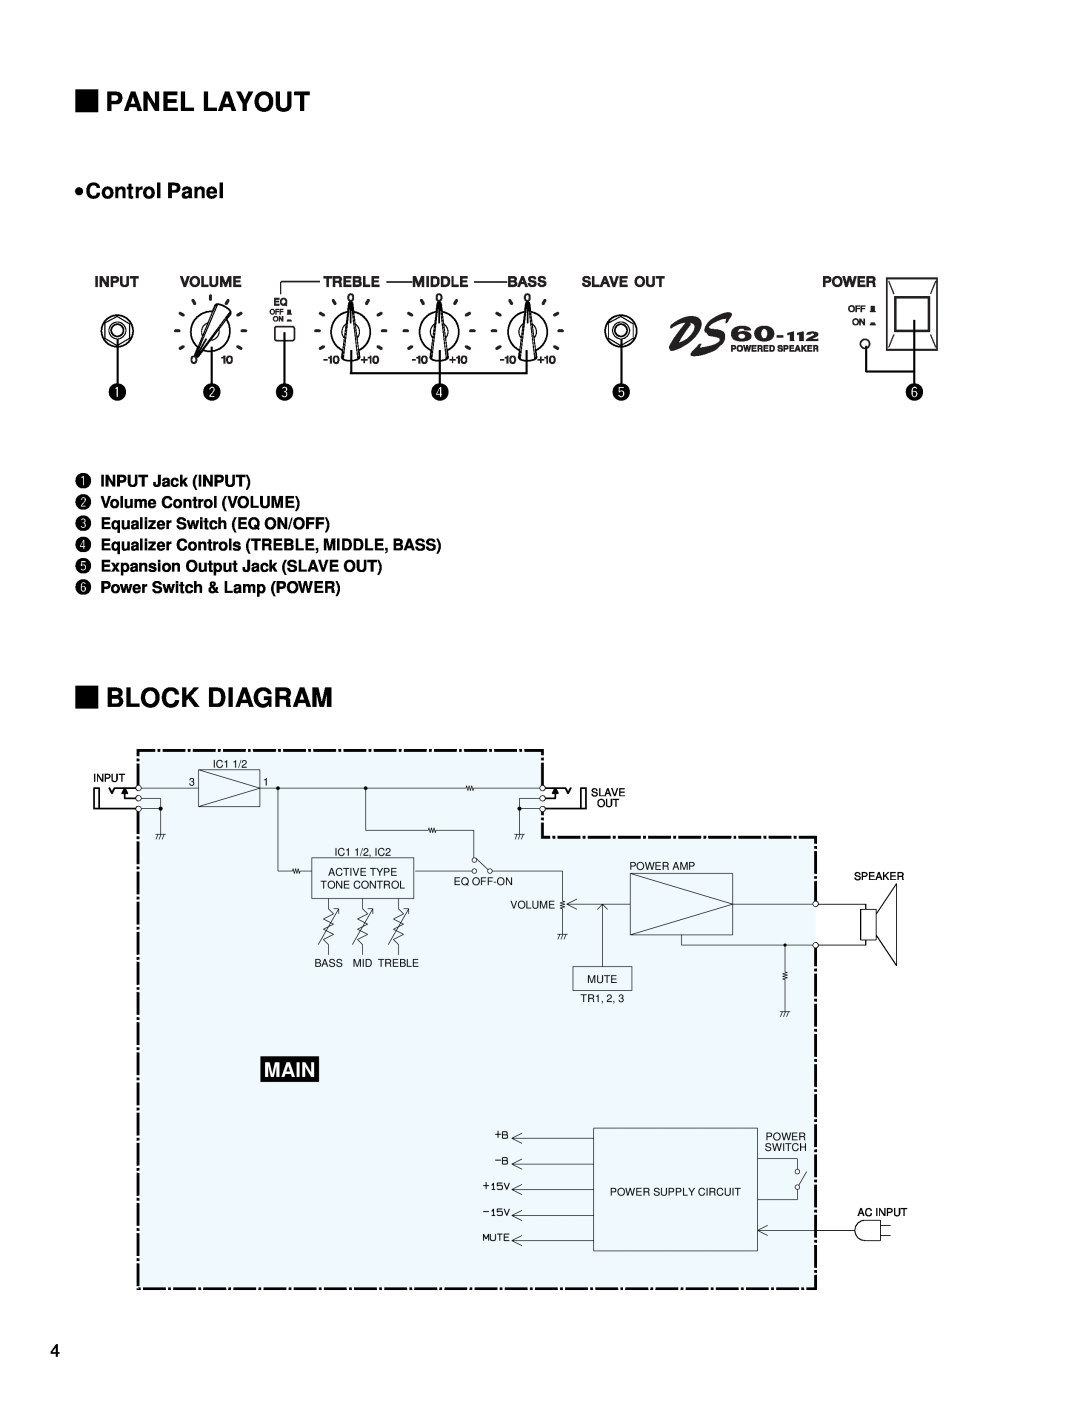 Yamaha DS60-112 service manual Panel Layout, Block Diagram, Control Panel, Main, qINPUT Jack INPUT wVolume Control VOLUME 